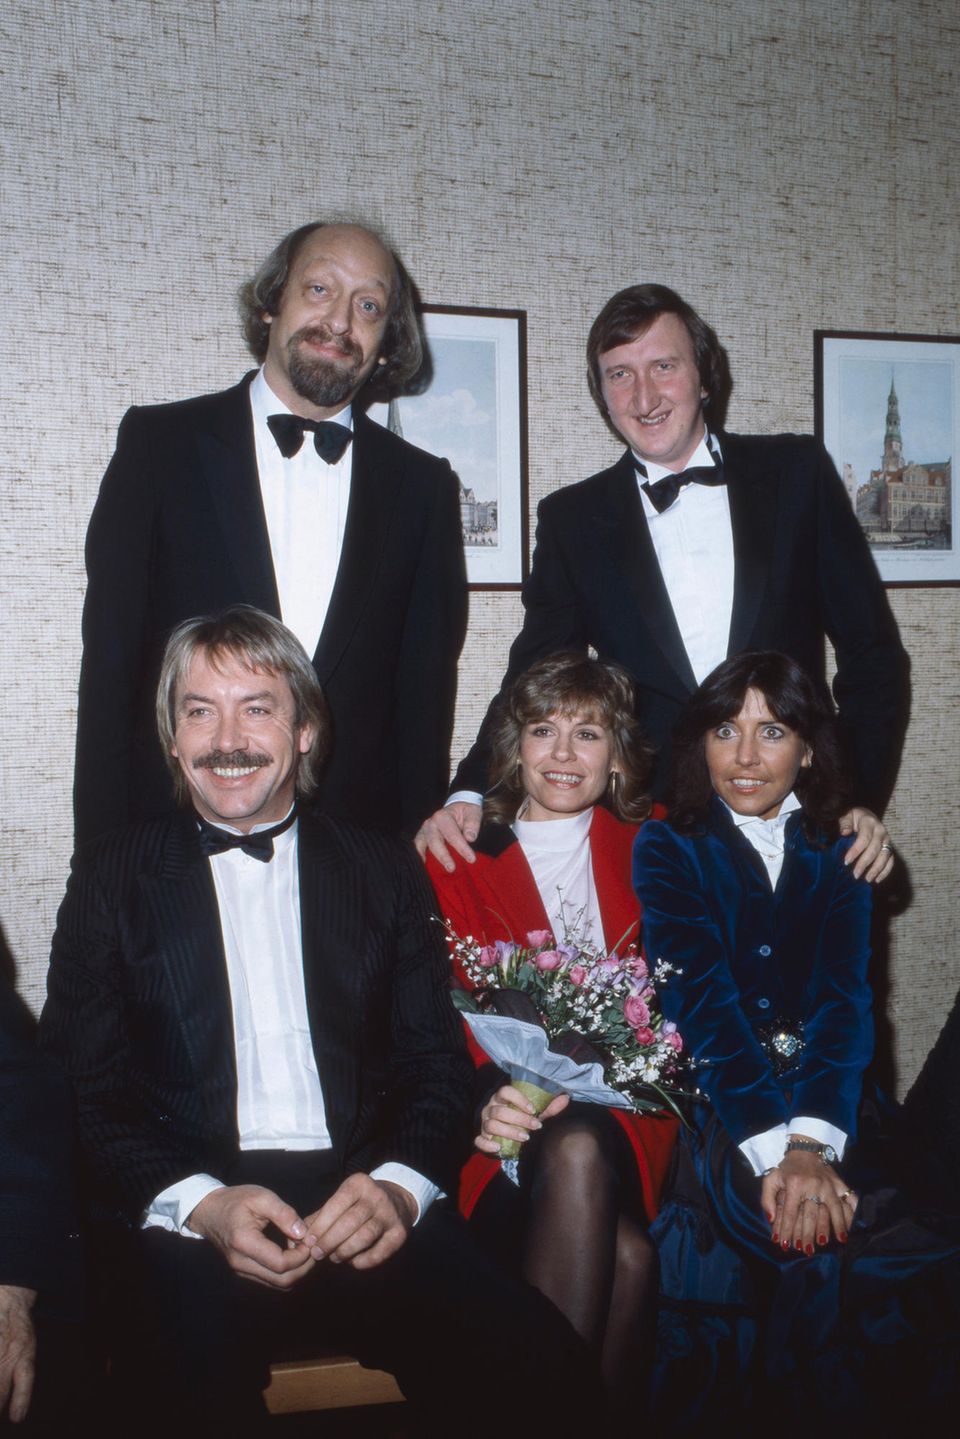 Hochzeit mit Werner Böhm 1982 – die Braut trägt Rot. Neben ihre ihre Schwester Tina York, hinten die beiden Trauzeugen Karl Dall (l.) und Mike Krüger.